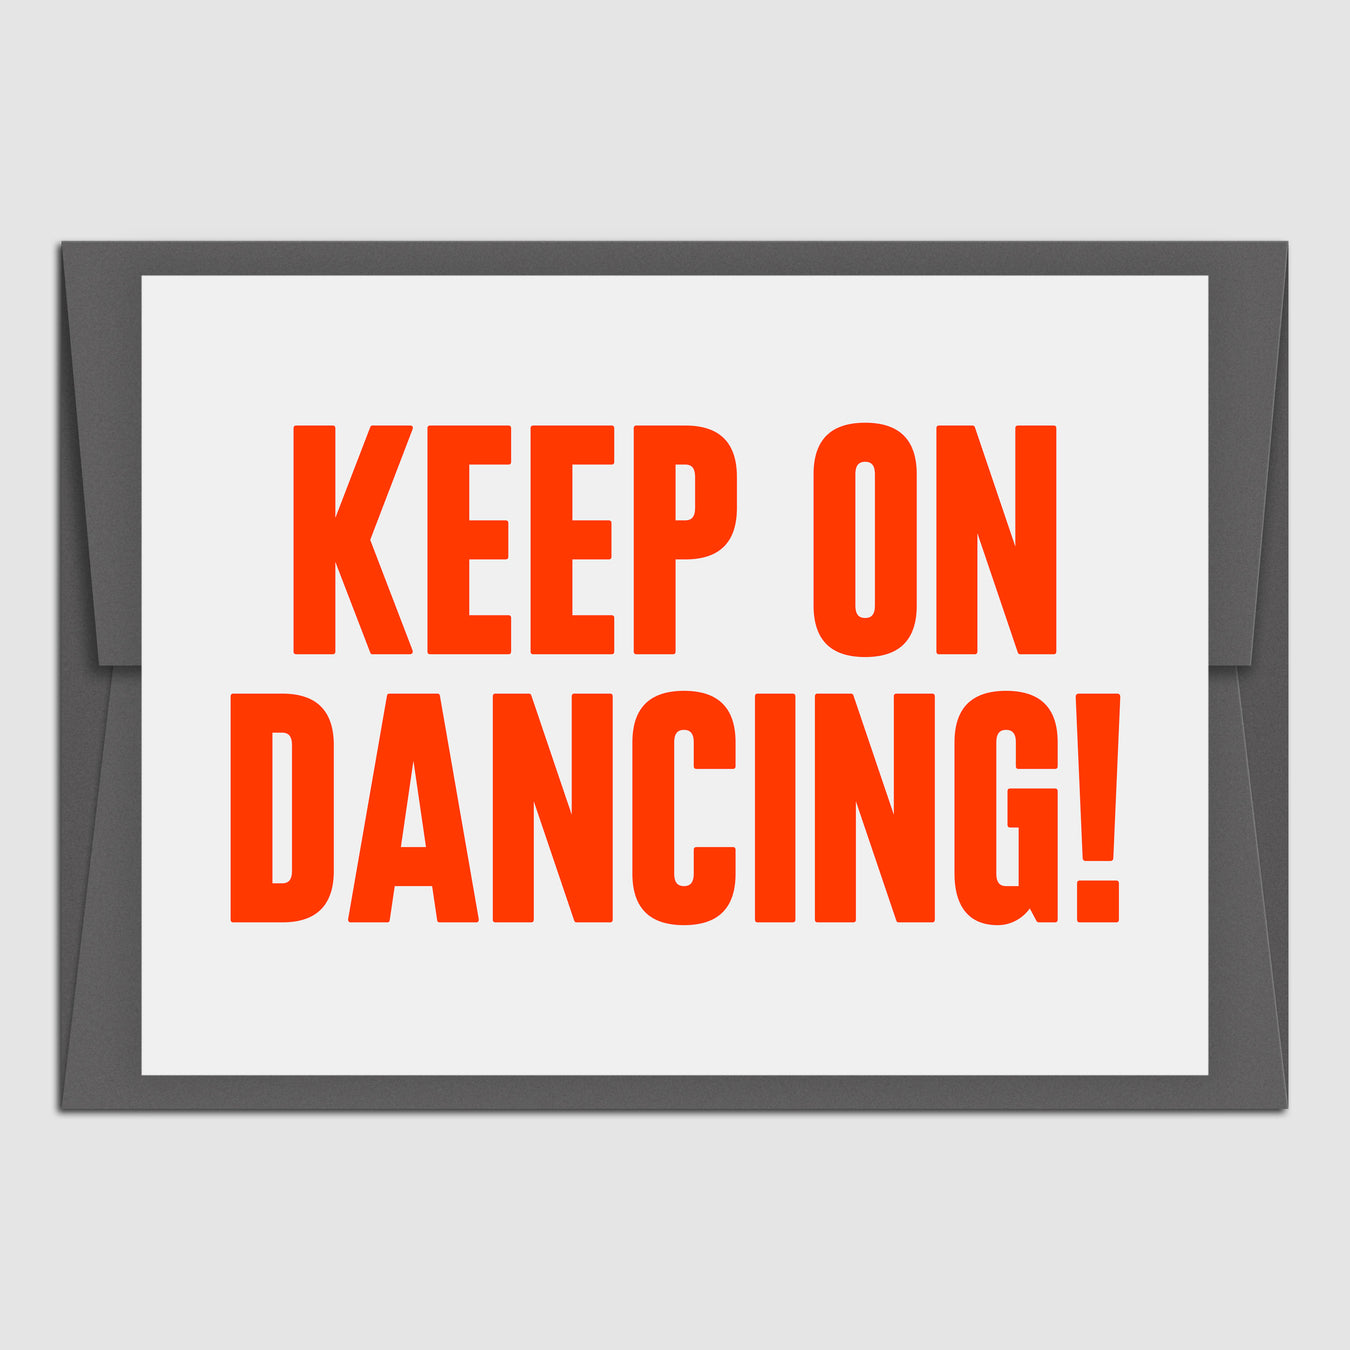 Keep on dancing! (Grußkarte)